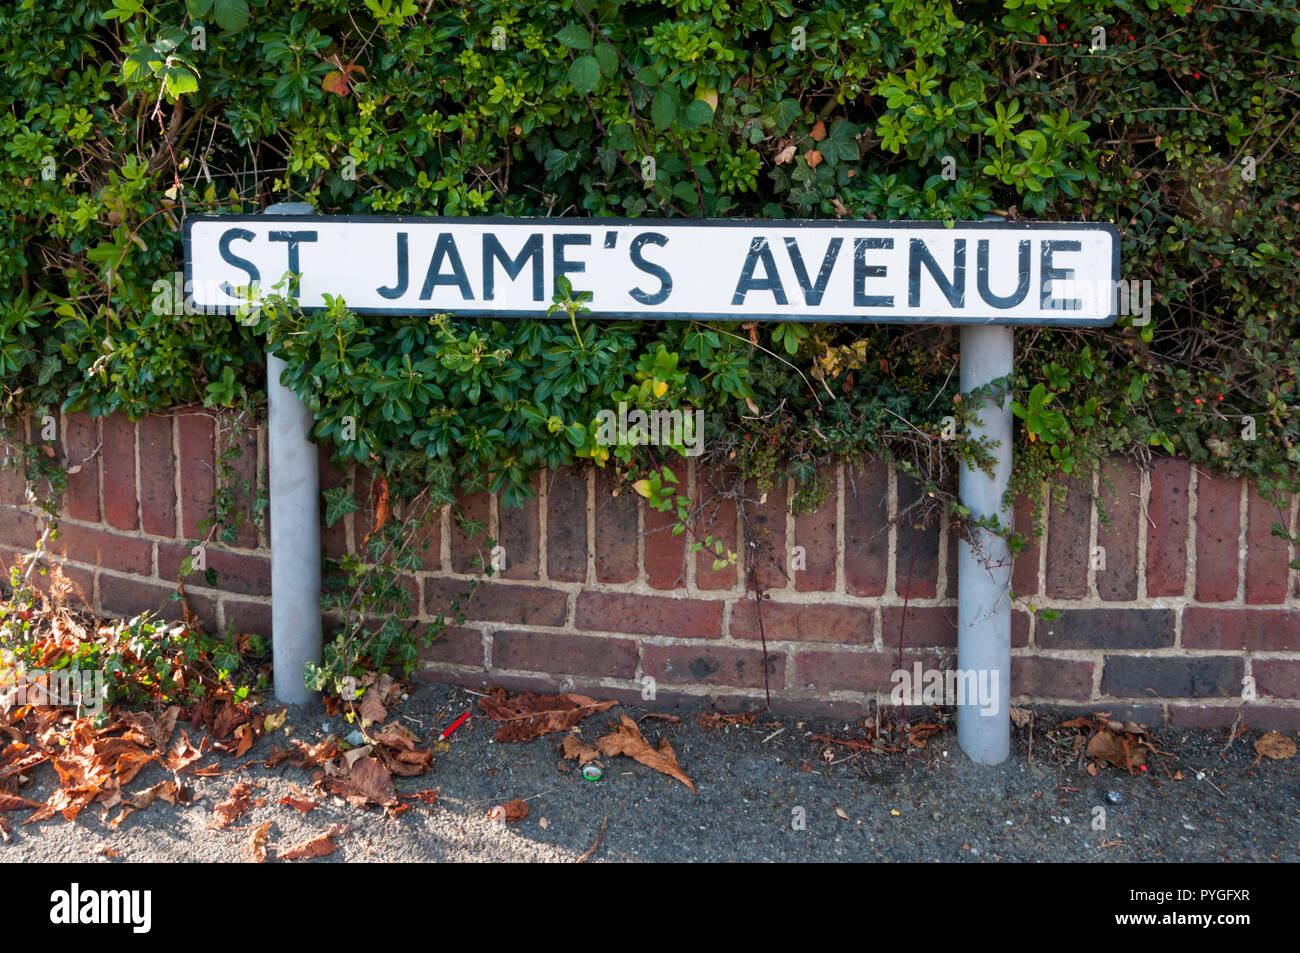 Cartel indica el nombre de la calle St Jame's Avenue, con un apóstrofe incorrectamente colocadas. Foto de stock